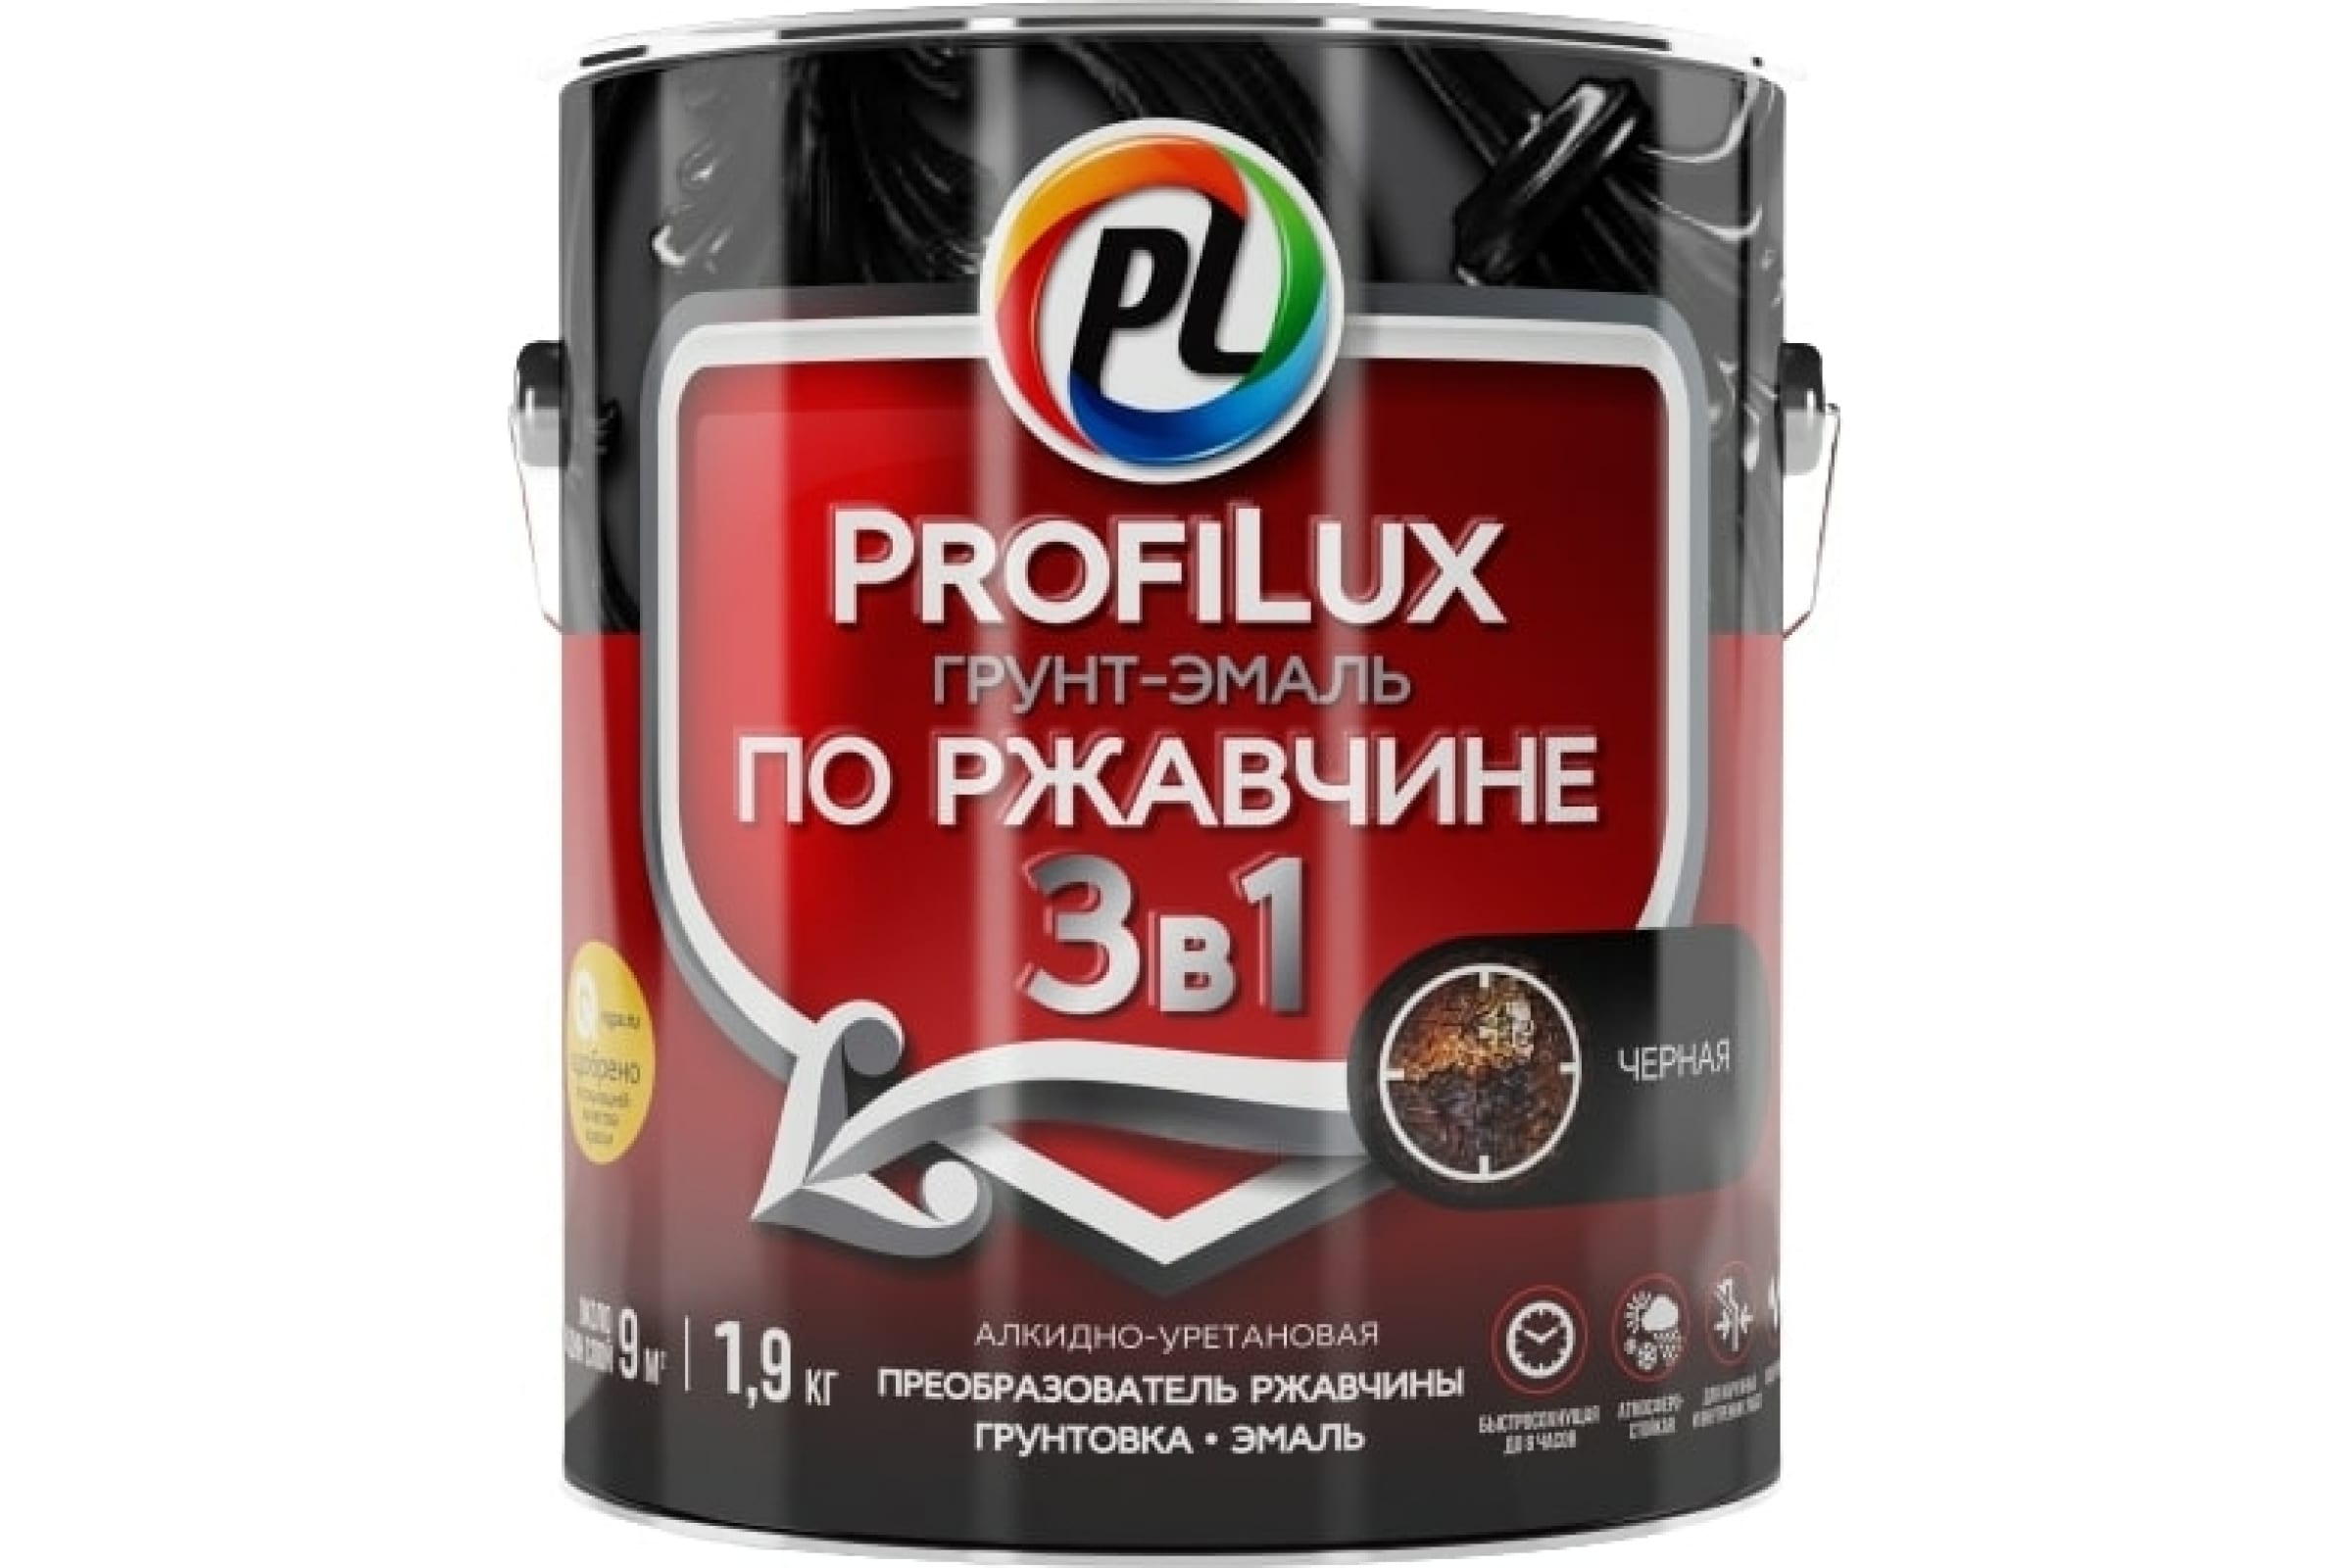 фото Profilux грунт эмаль по ржавчине 3в1 черная 1,9 кг н0000005013